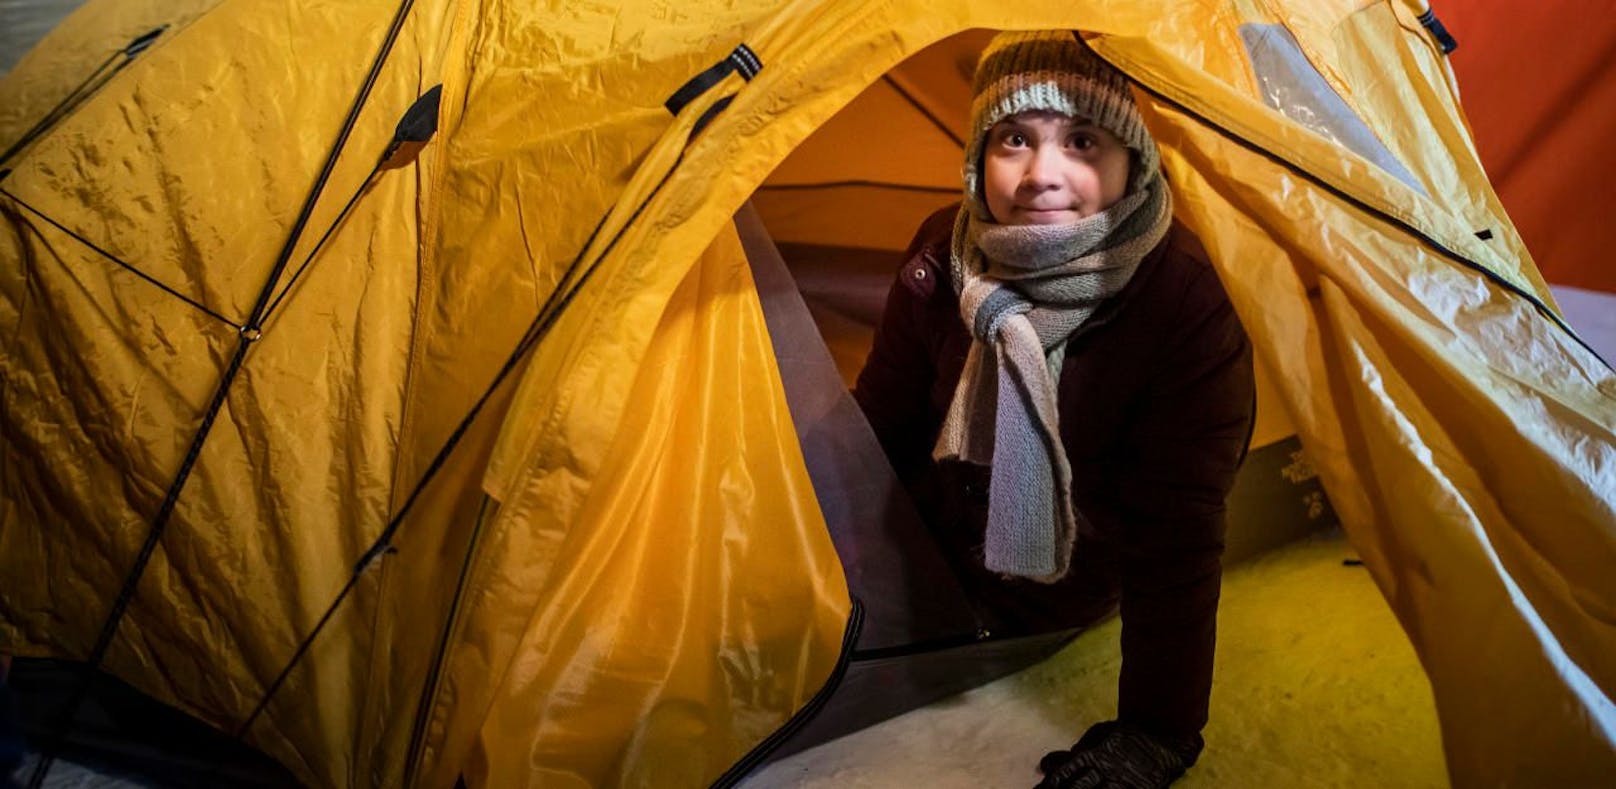 Öko-Pippi schläft bei minus 15 Grad im Zelt